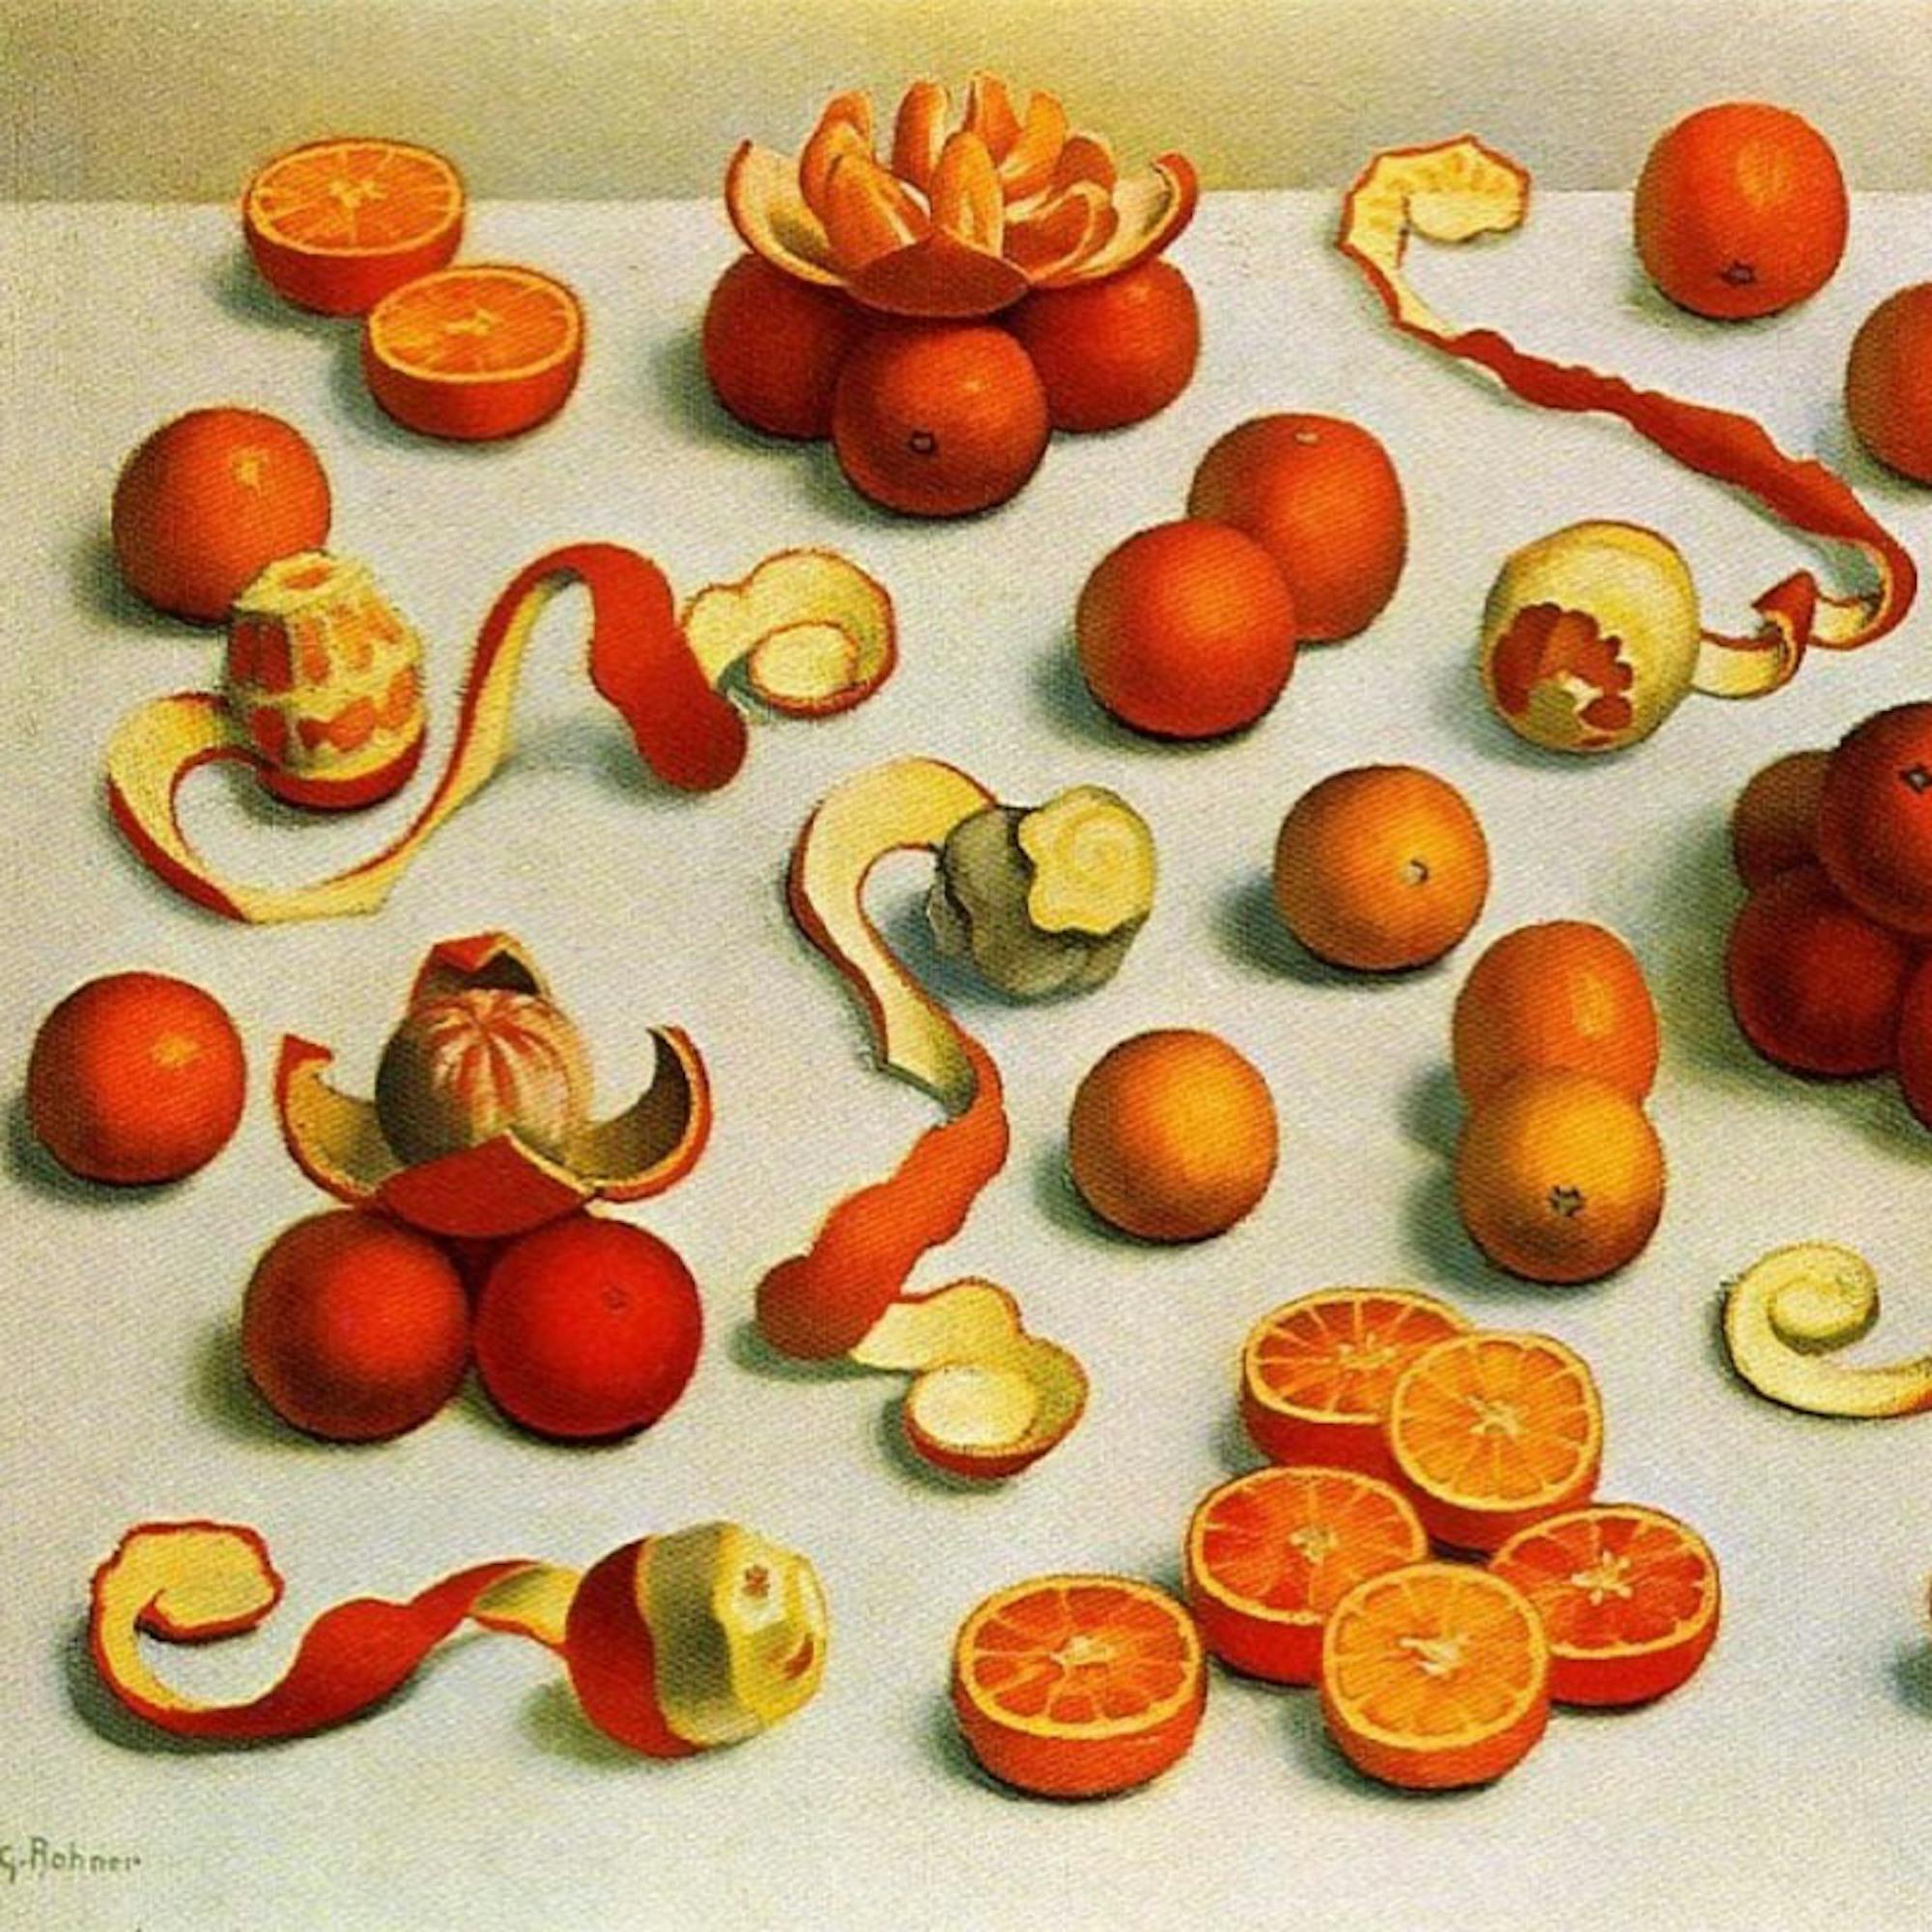 Georges Rohner citrus art